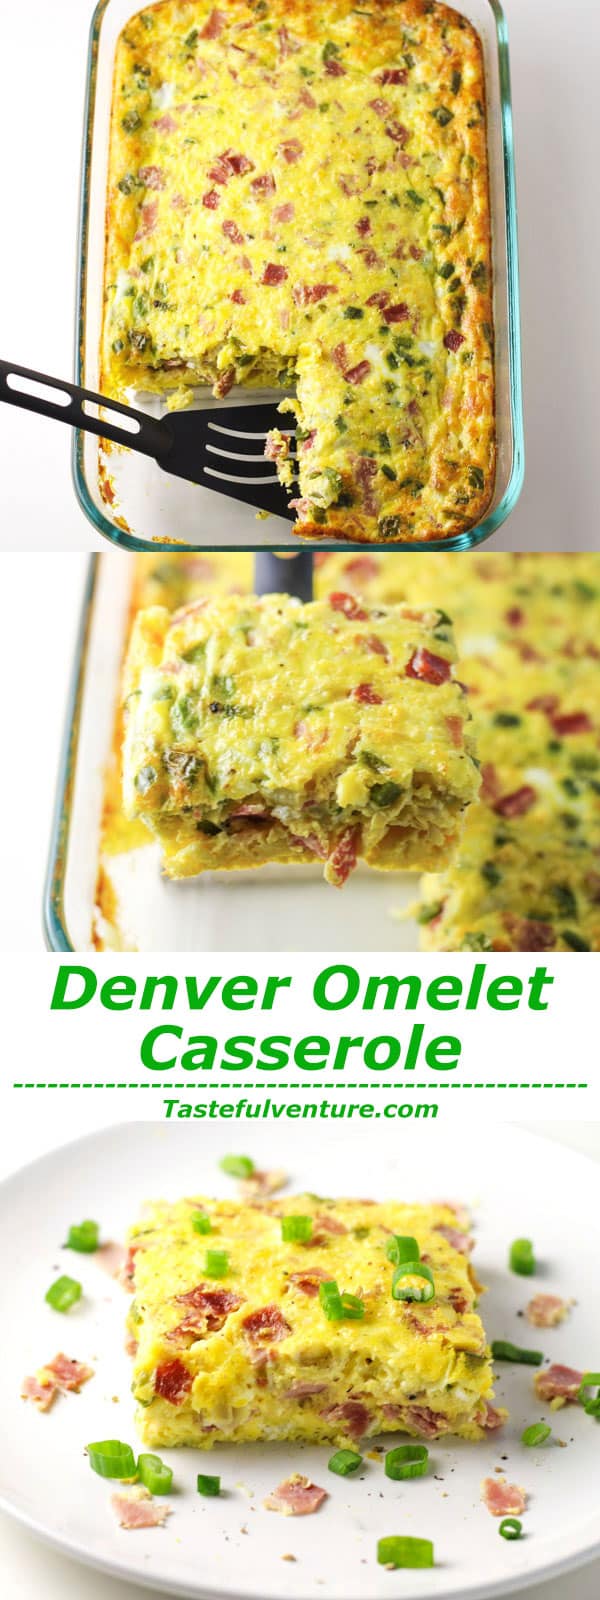 Denver omelet casserole